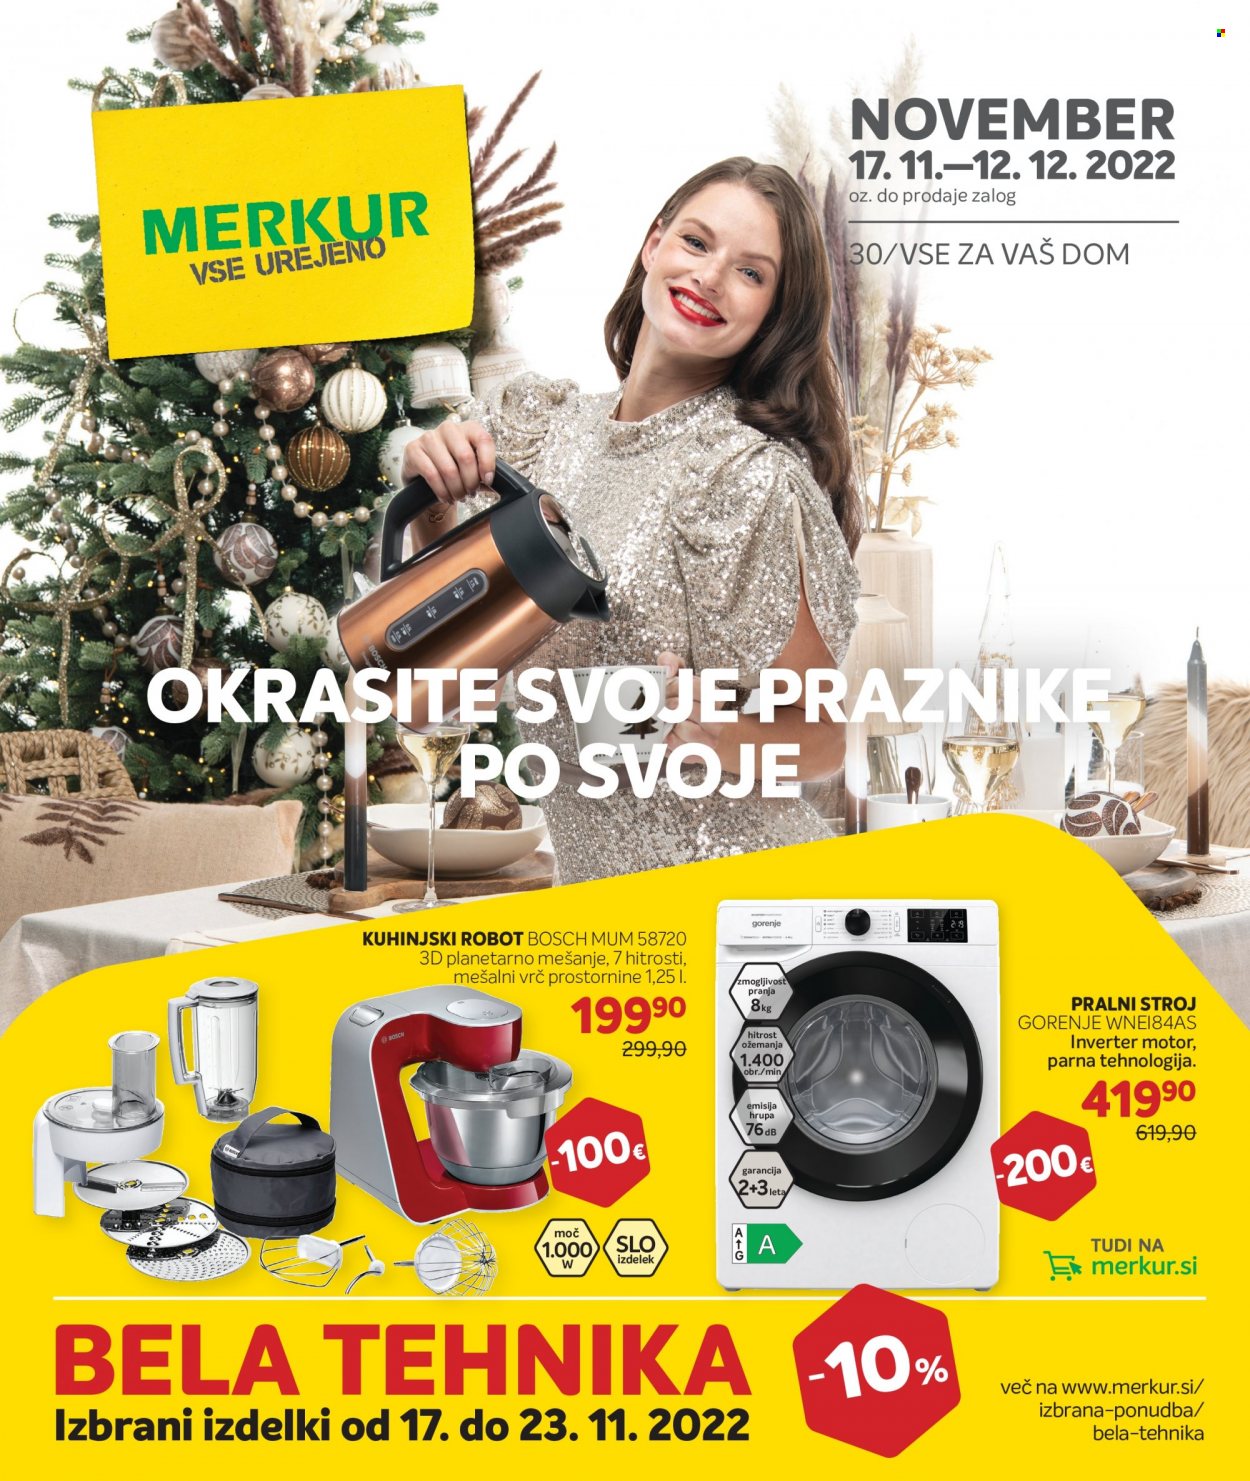 thumbnail - Merkur katalog - 17.11.2022 - 12.12.2022 - Ponudba izdelkov - Bosch, Gorenje, pralni stroj. Stran 1.